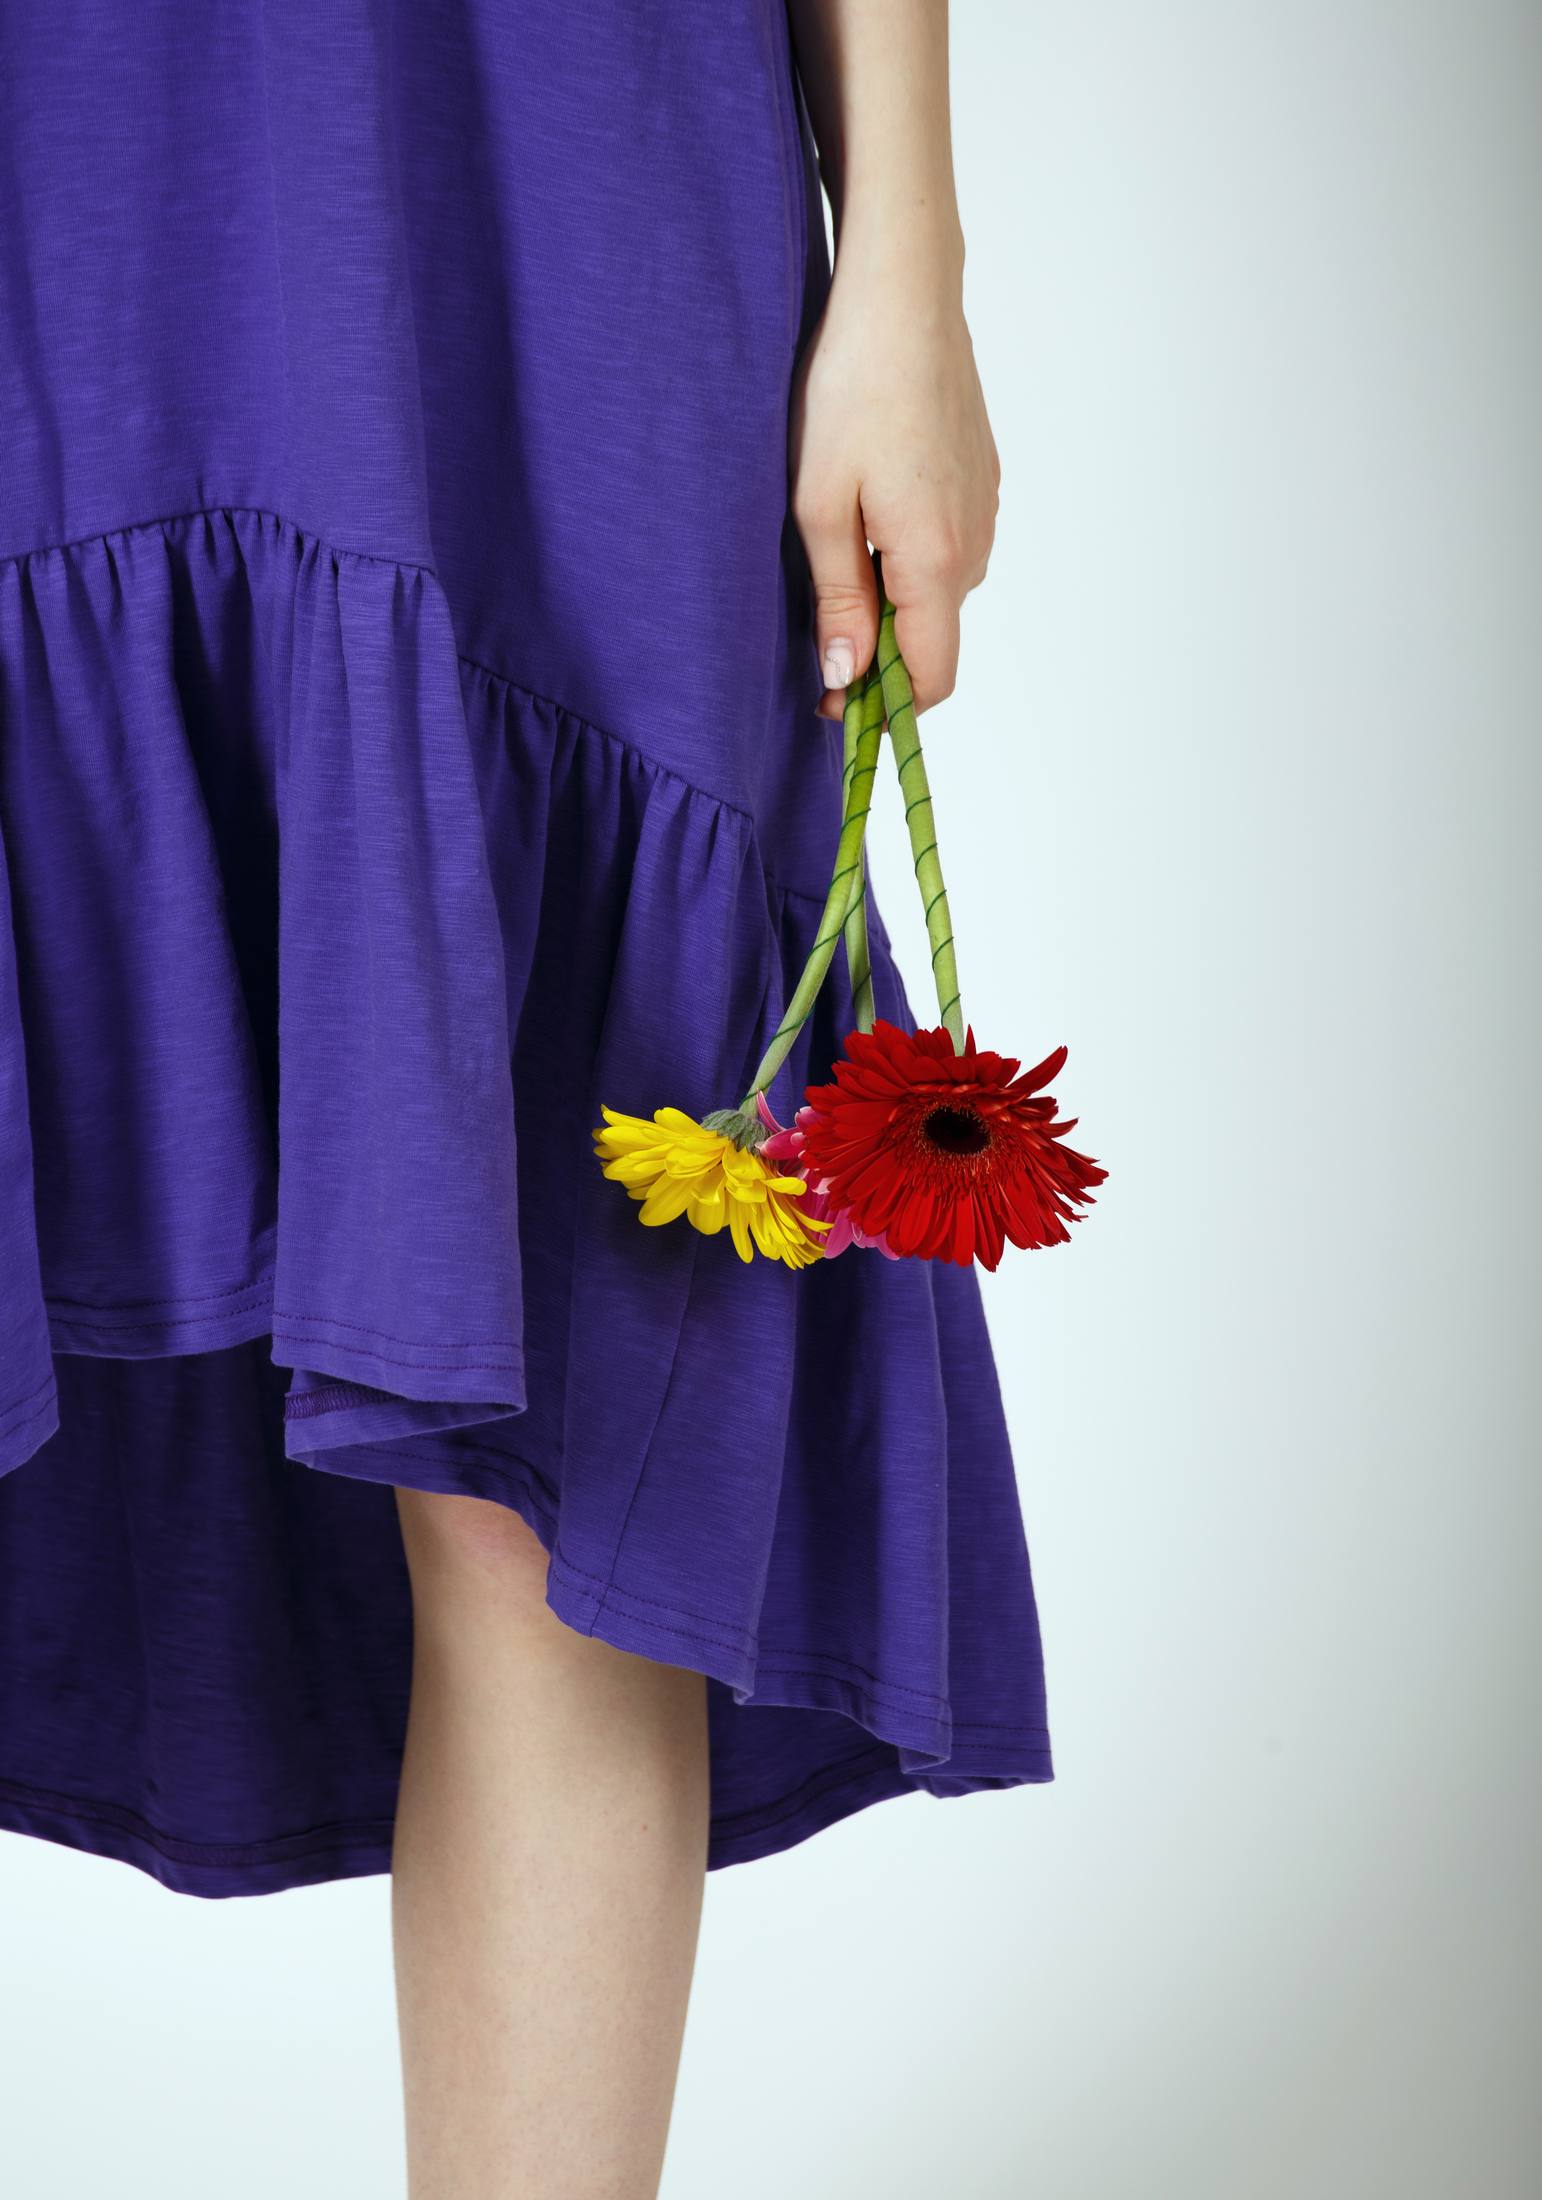 Платье женское 2517 фиолетовый Каталог товаров 